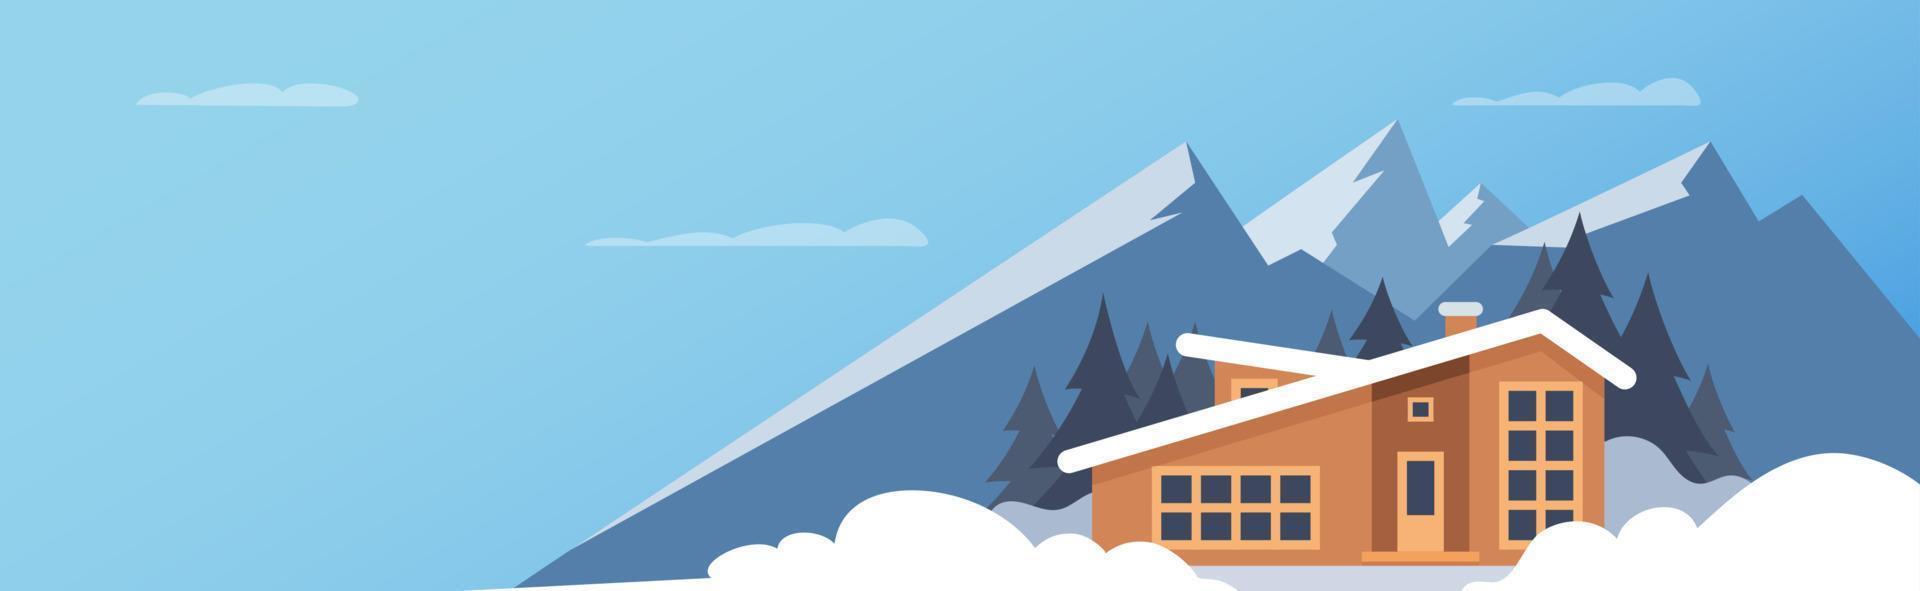 deporte de invierno. paisaje de montaña de invierno con casa grande para turistas. vacaciones de invierno en la montaña, estaciones de esquí, alquiler de casas. ilustración plana vectorial. vector